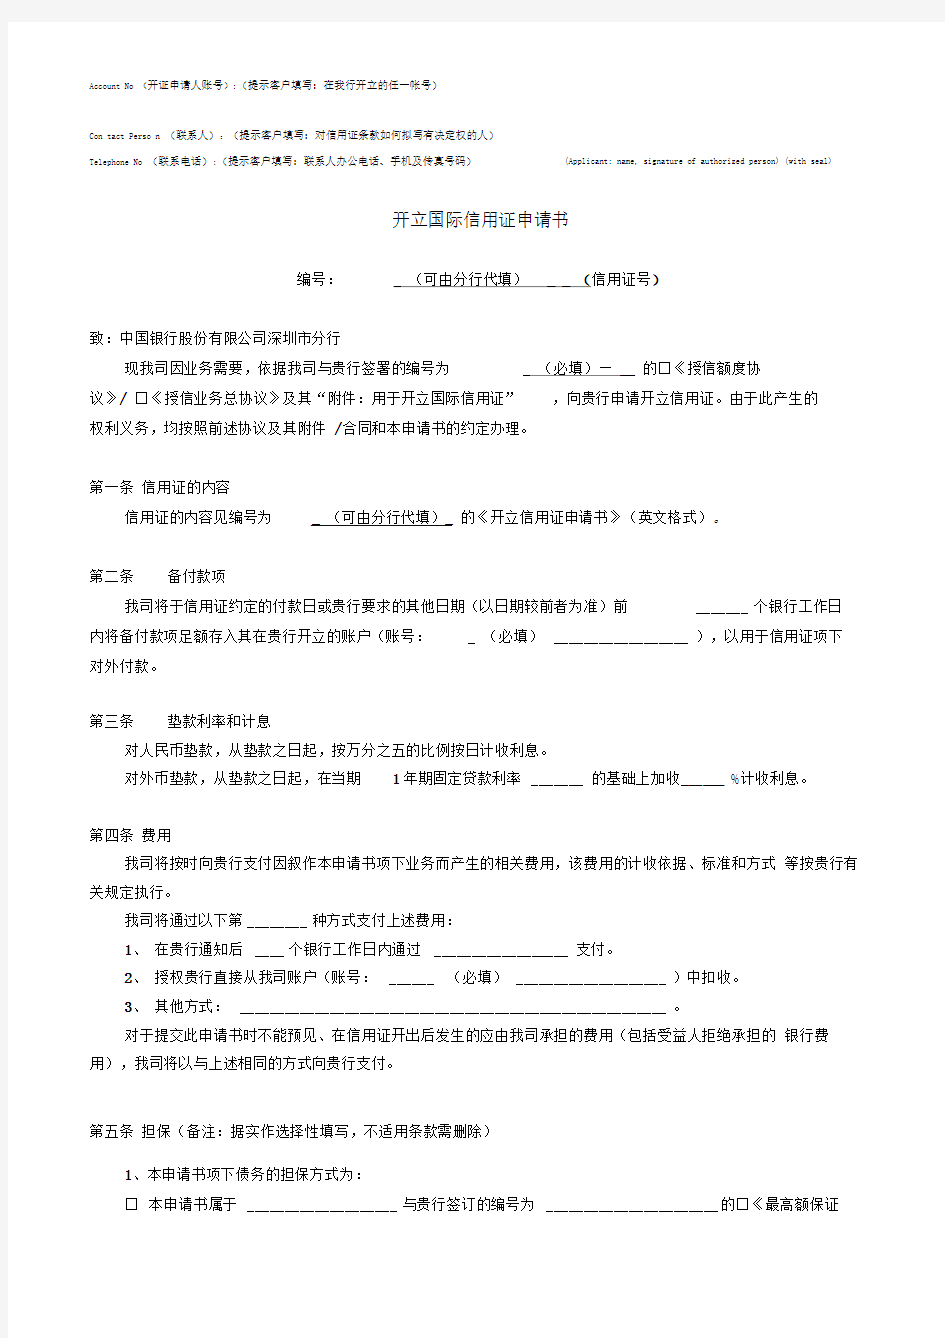 开证申请书中文翻译及填写要点提示